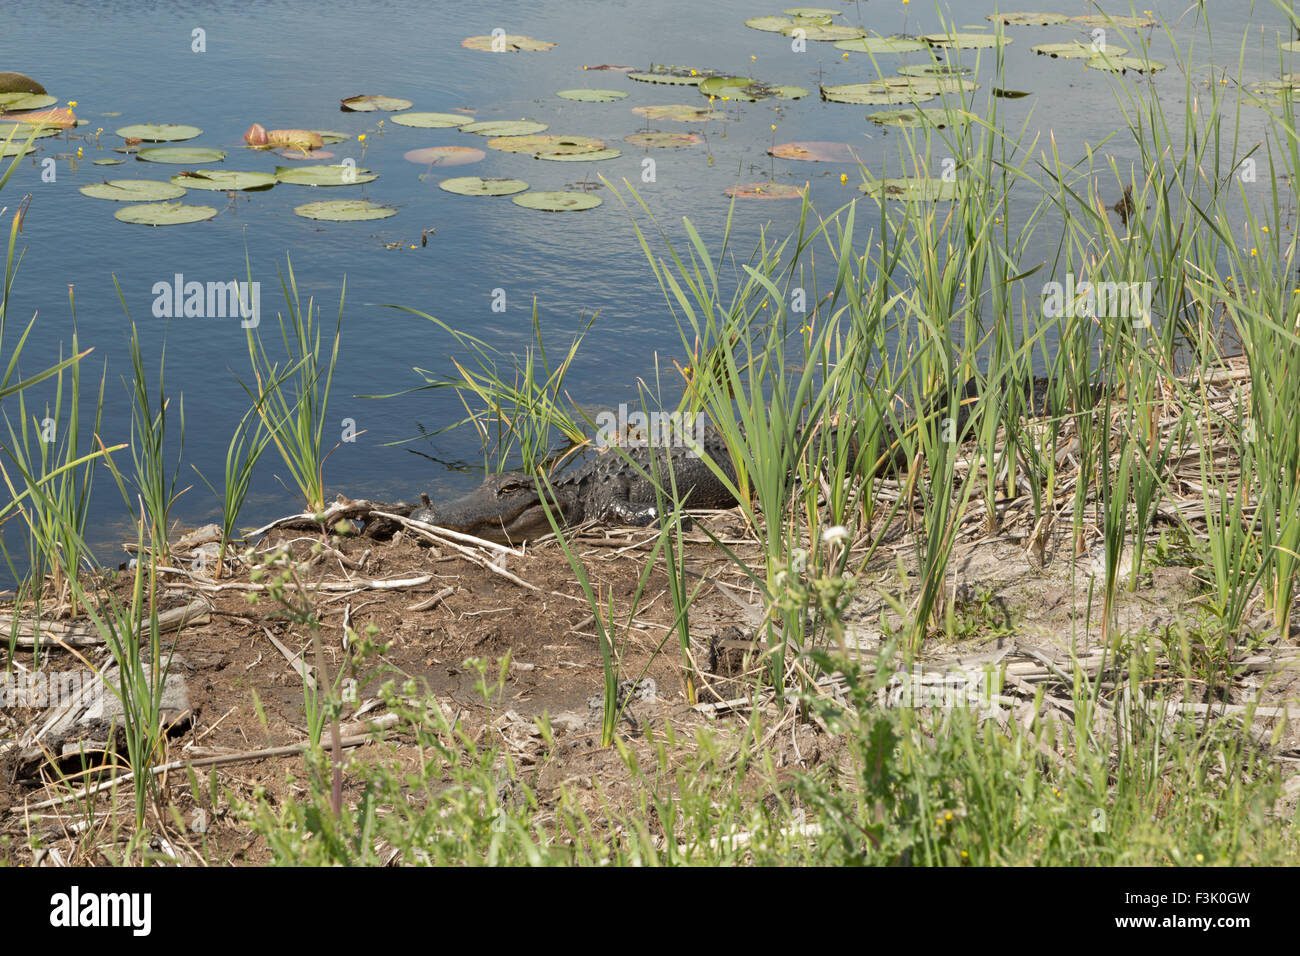 Ein Foto von einem amerikanischen Alligator in freier Wildbahn in der Nähe von Savannah in Georgia. Stockfoto